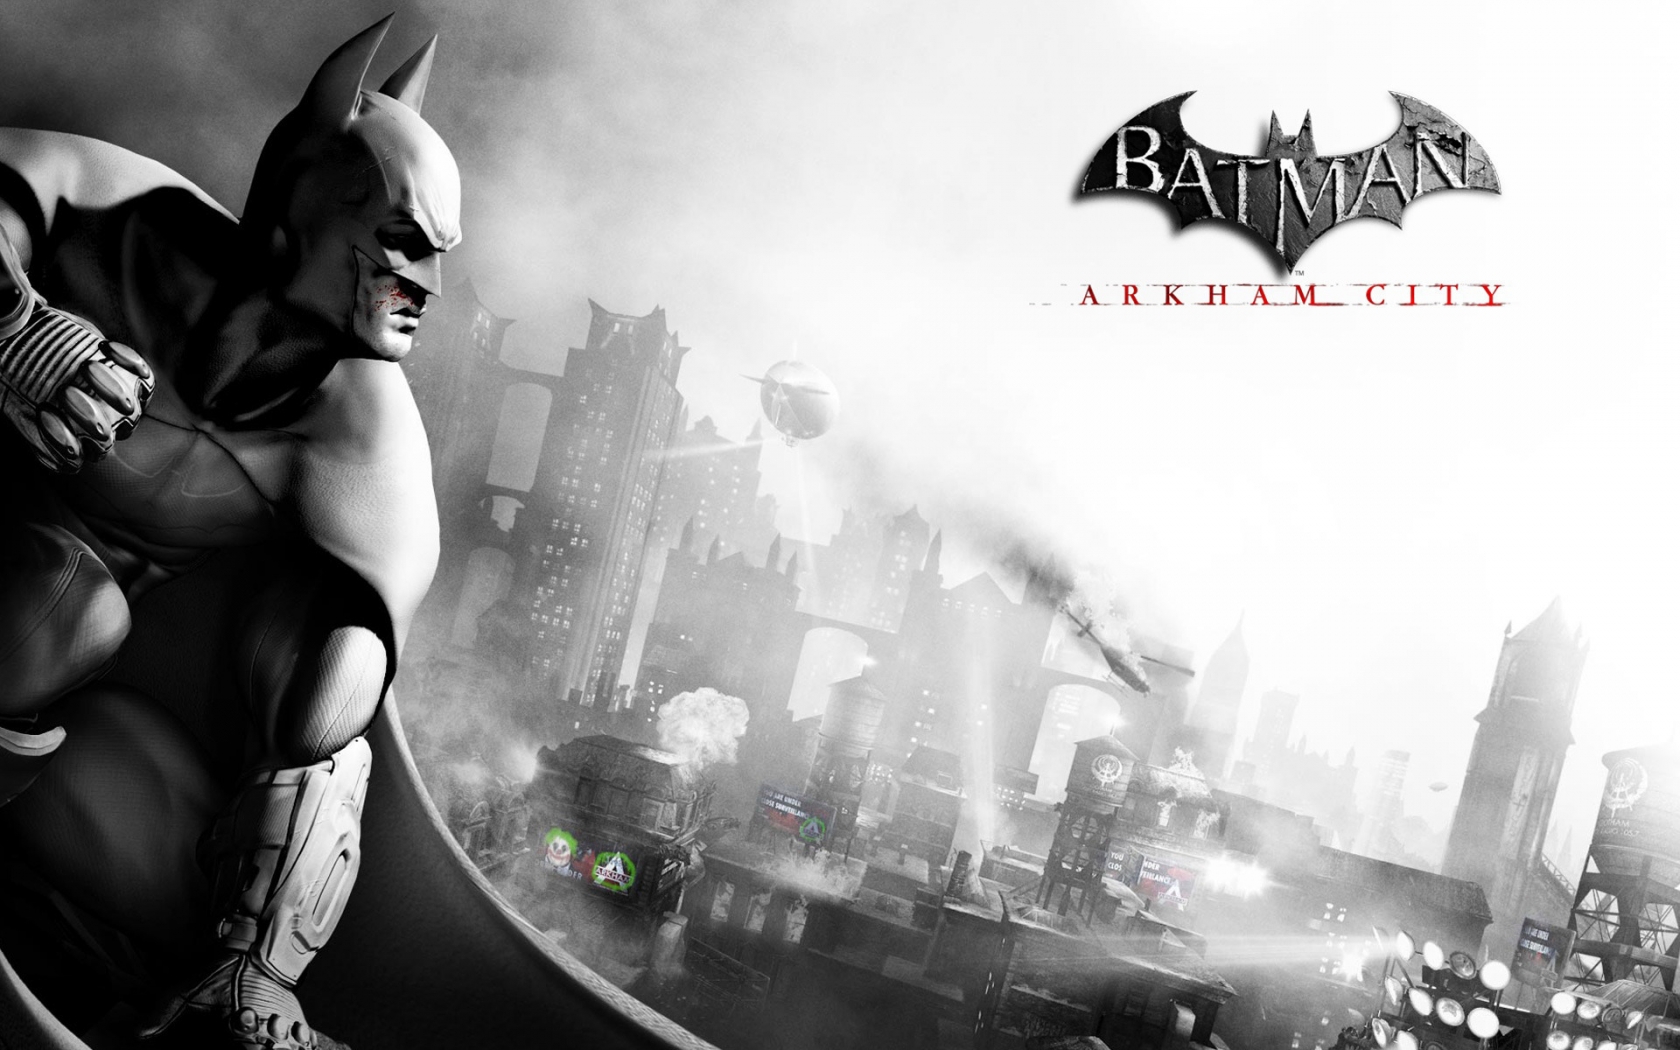 Batman Arkham City for 1680 x 1050 widescreen resolution